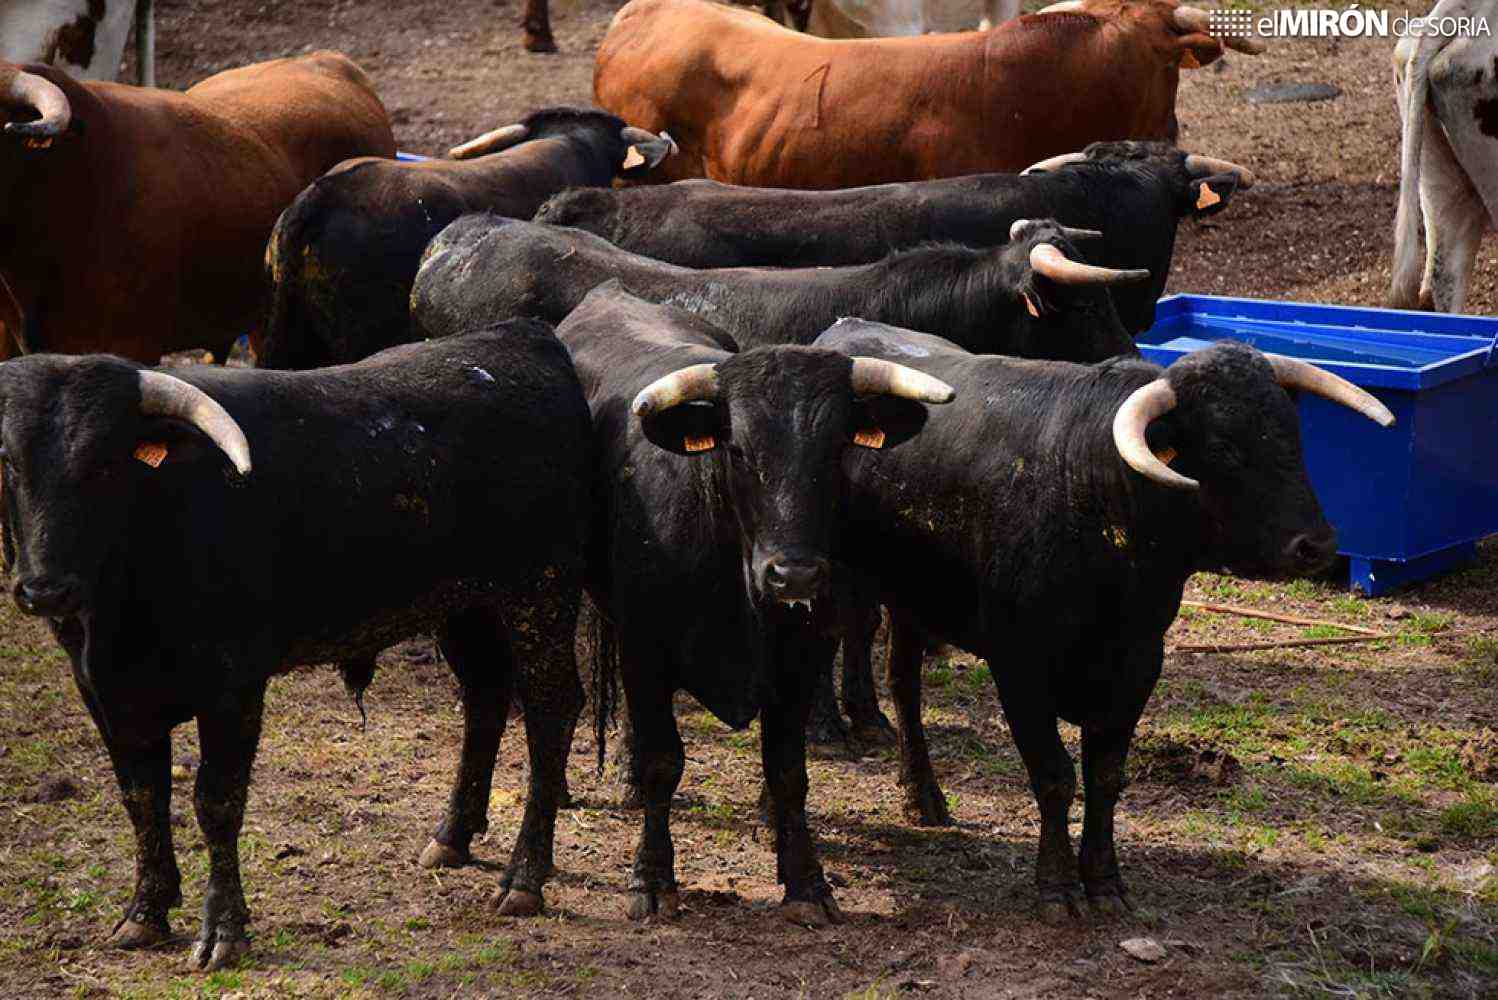 El alcalde de Soria pide prudencia para desencajonamiento de toros